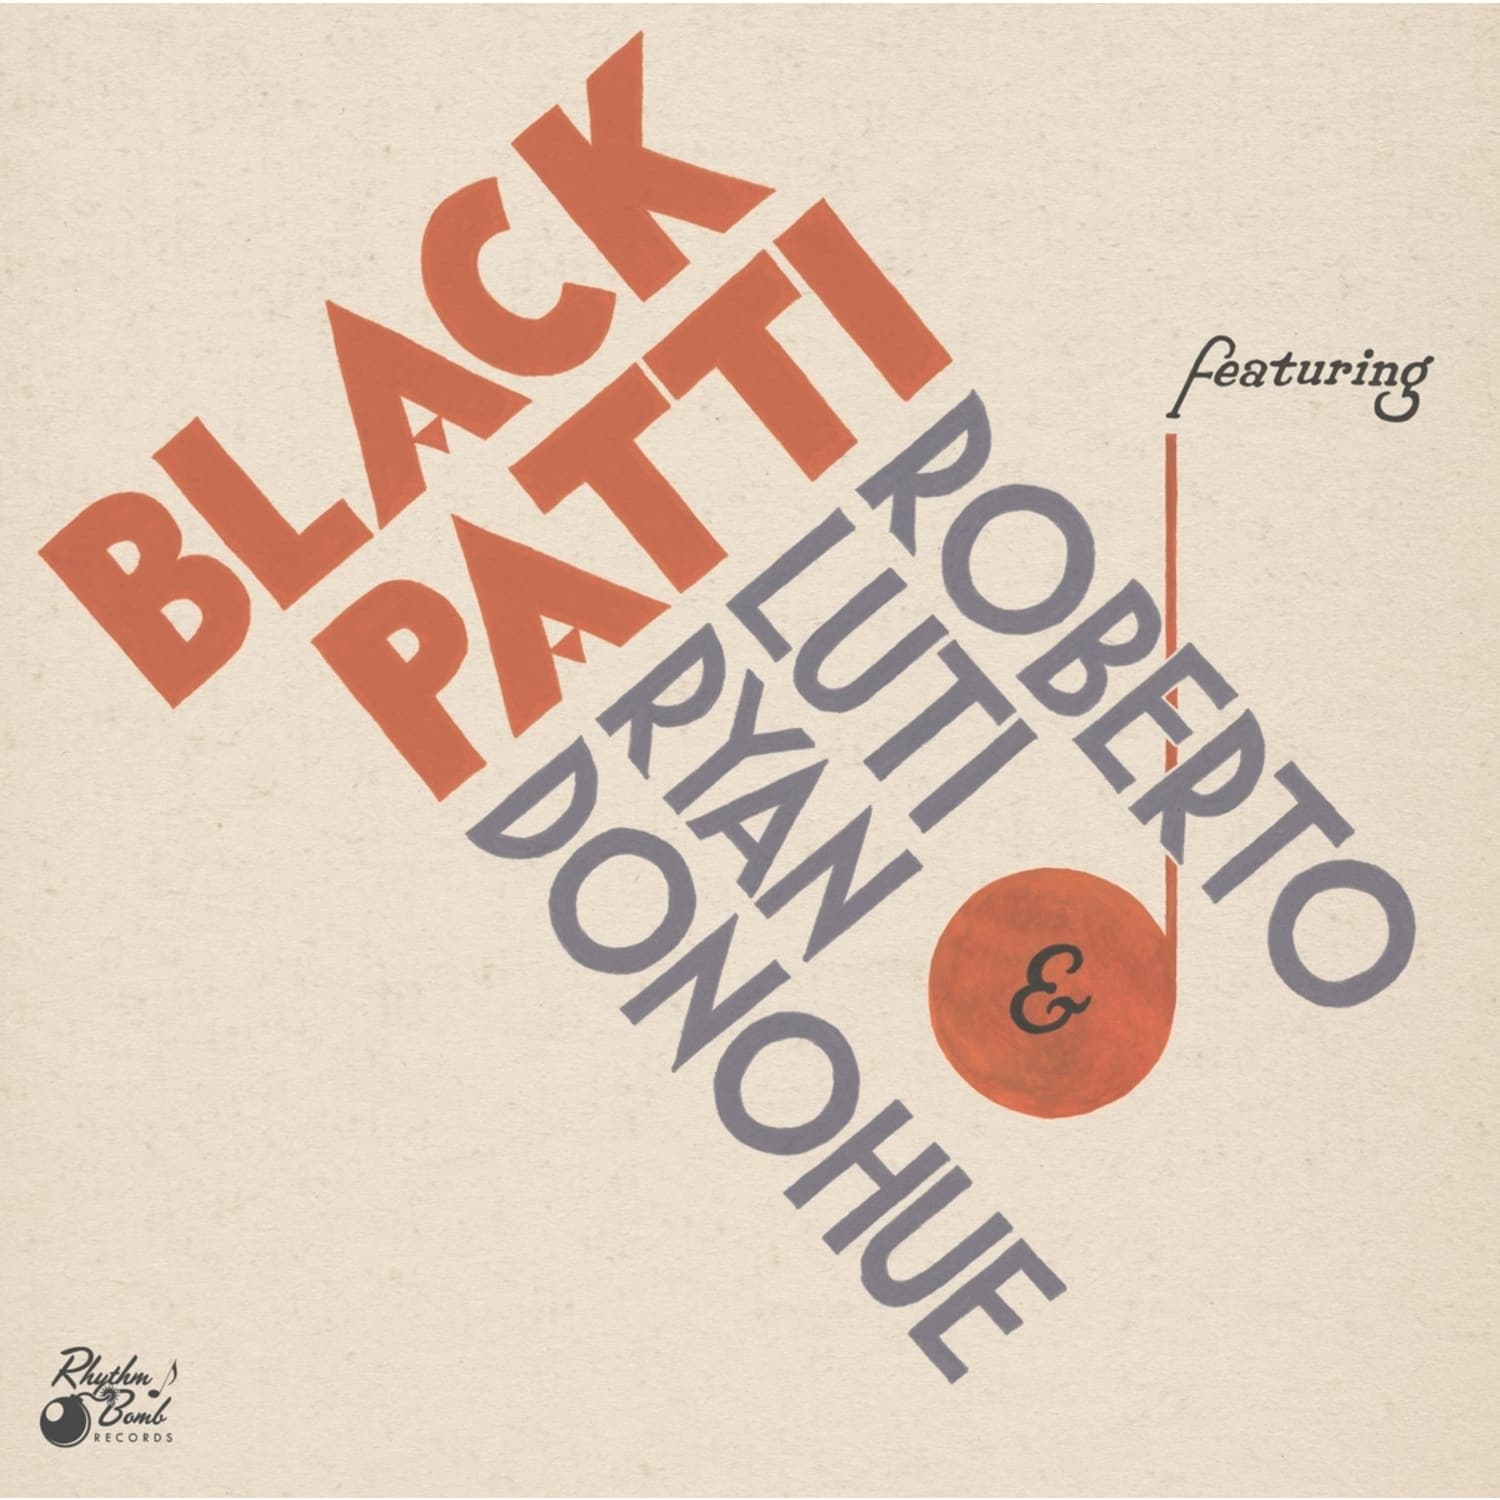 Black Patti / Roberto Luti / Ryan Donohue - FAVORITE REQUESTS 